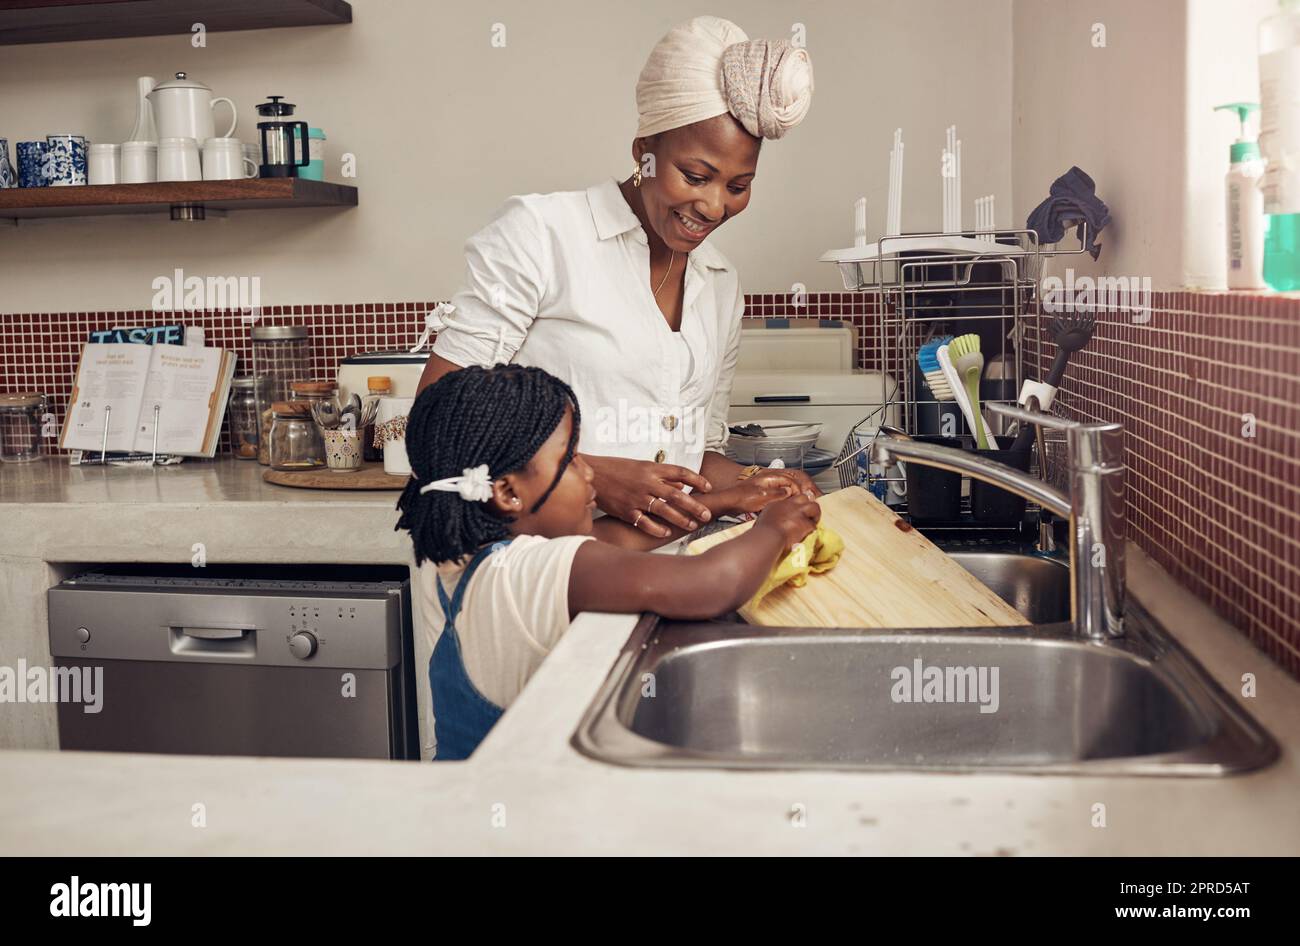 Nous aimons tous les deux une maison propre et hygiénique. Une adorable petite fille aidant sa mère à faire les plats à la maison. Banque D'Images